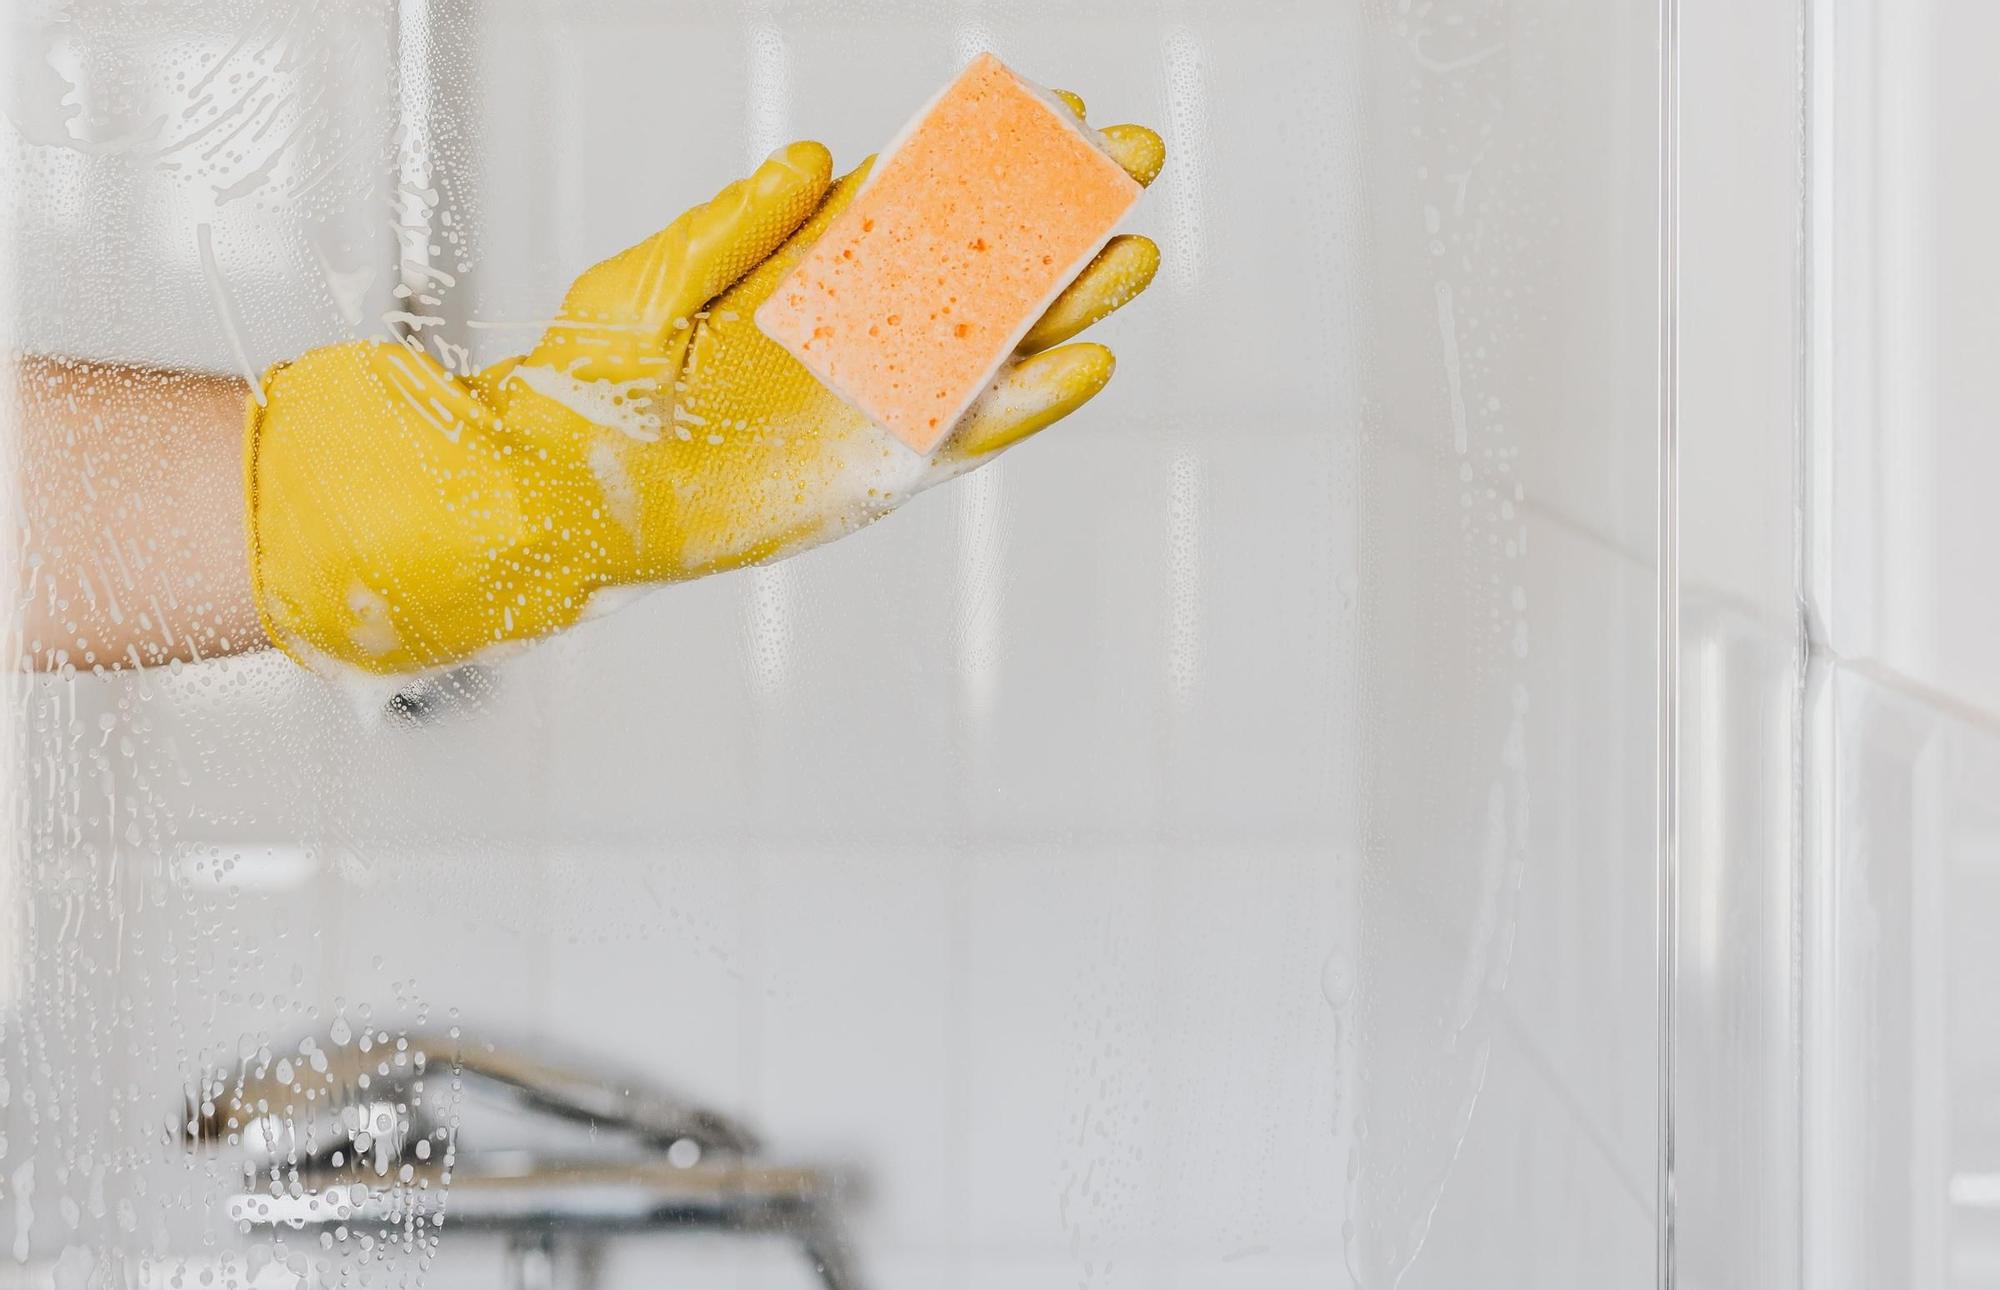 QUITAR CAL MAMPARA DUCHA  ¿Cómo eliminar la cal de la mampara de la ducha?